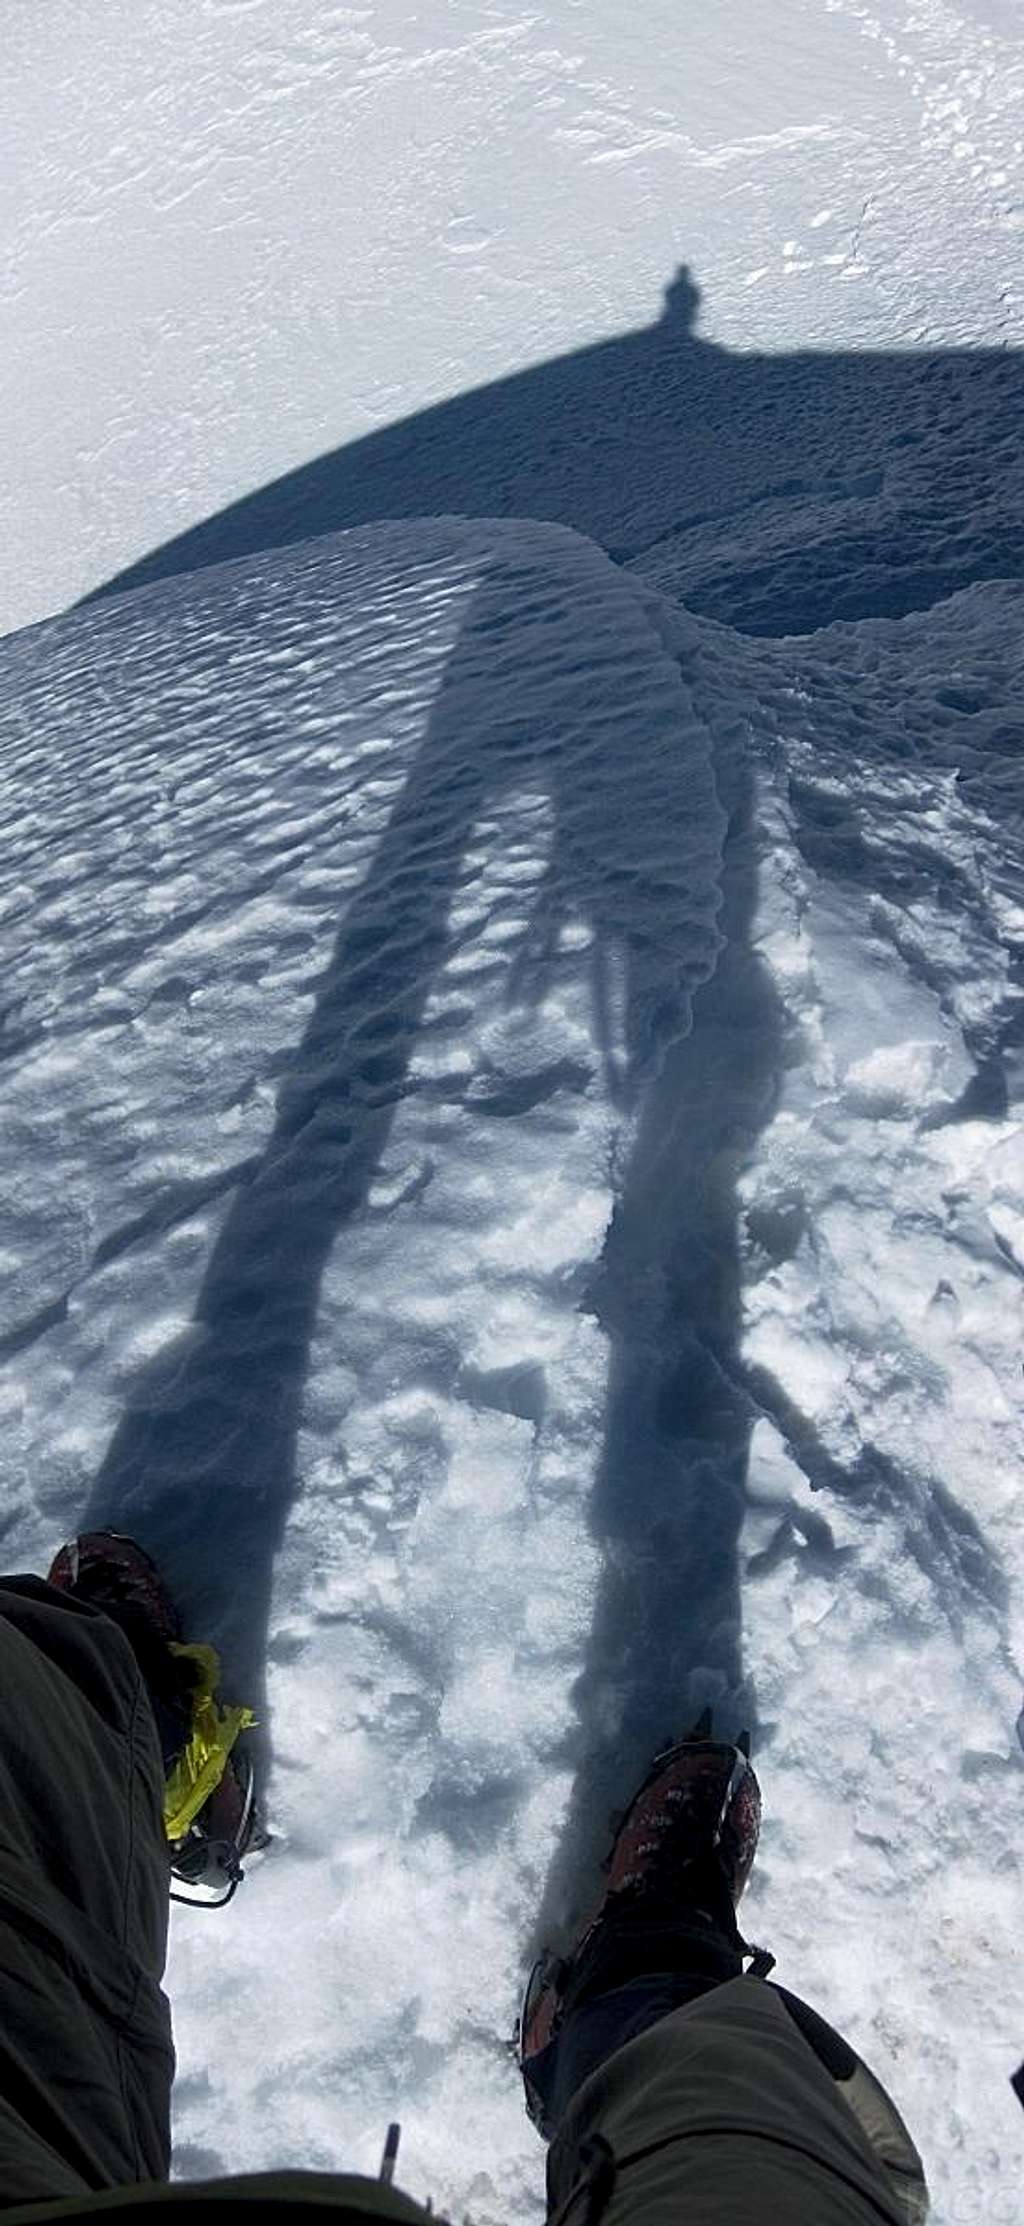 A Looooong shadow <small>- looking down from the summit of Ishinca</small>